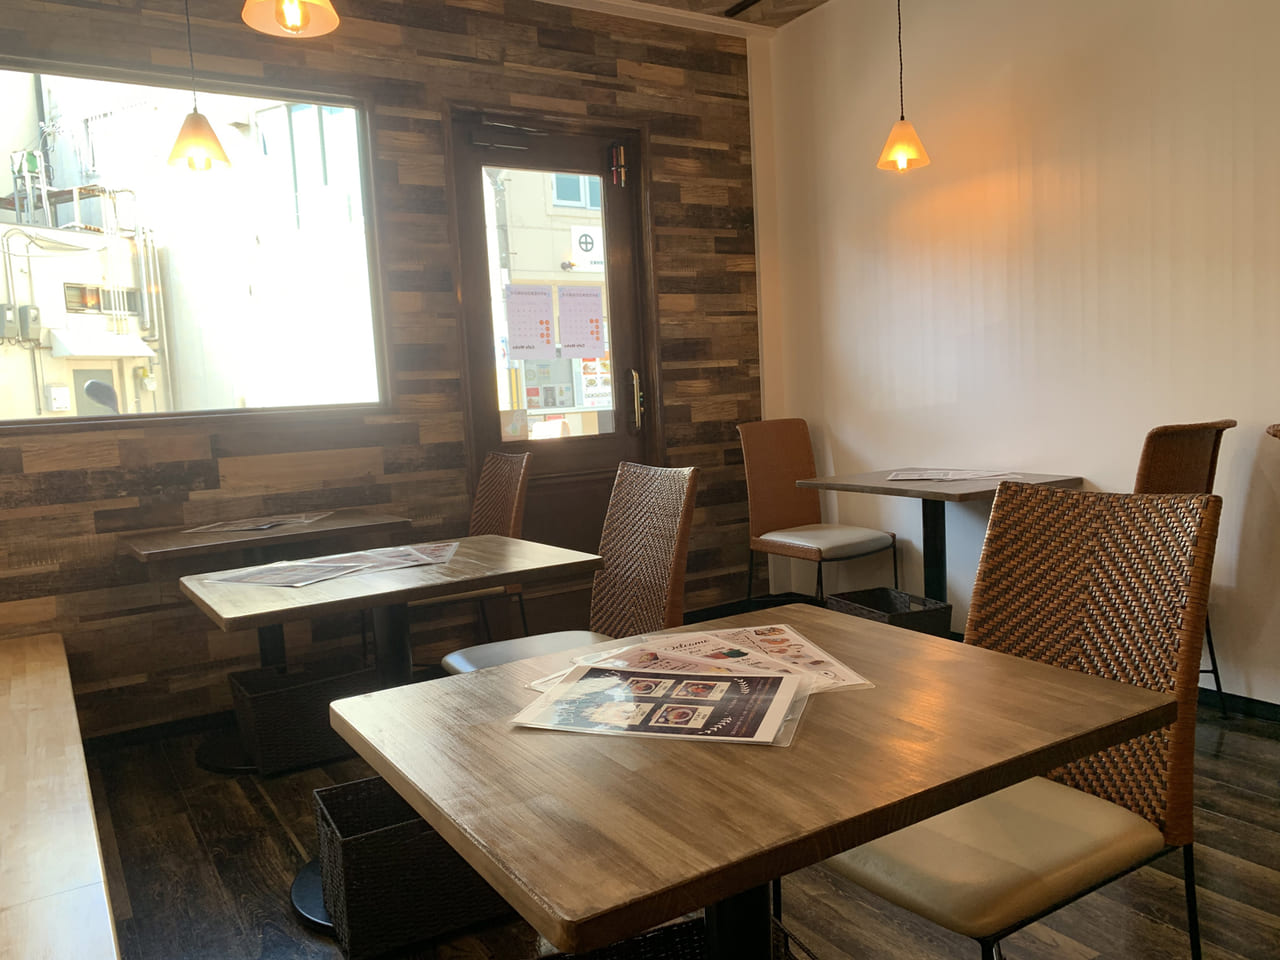 堺市西区 津久野にできた可愛い 隠れ家的なカフェ Cafe Moka のランチが優秀 号外net 堺市堺区 西区